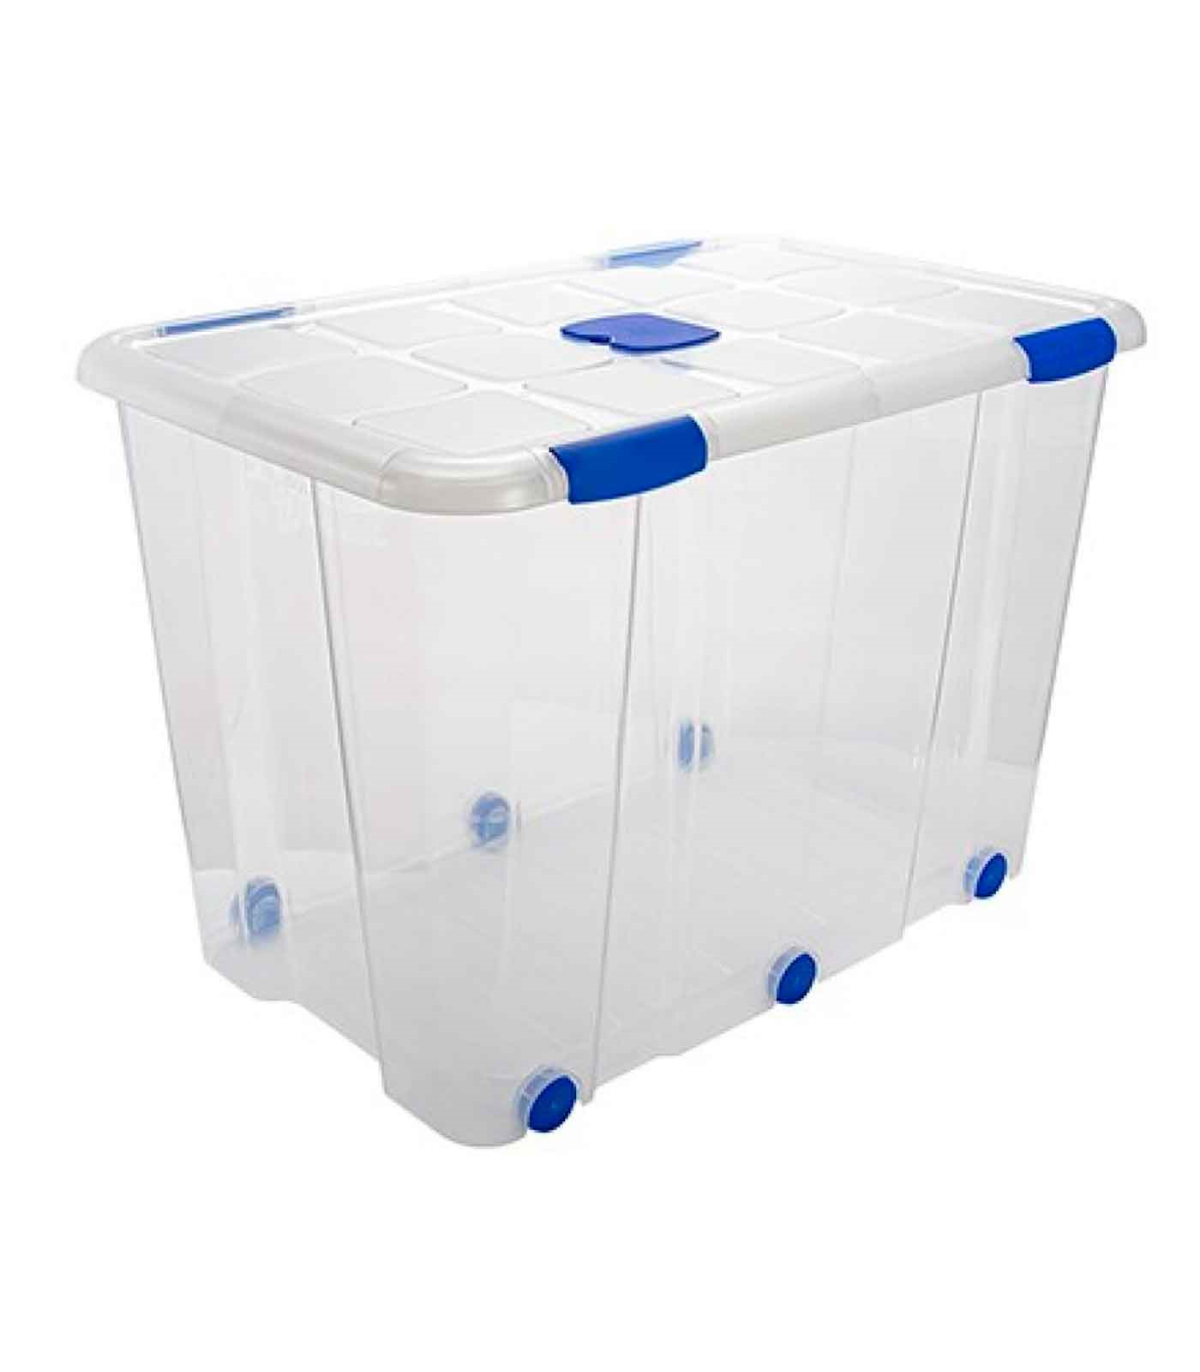 Tradineur - Caja organizadora de plástico, 3 baldas y asa, 30